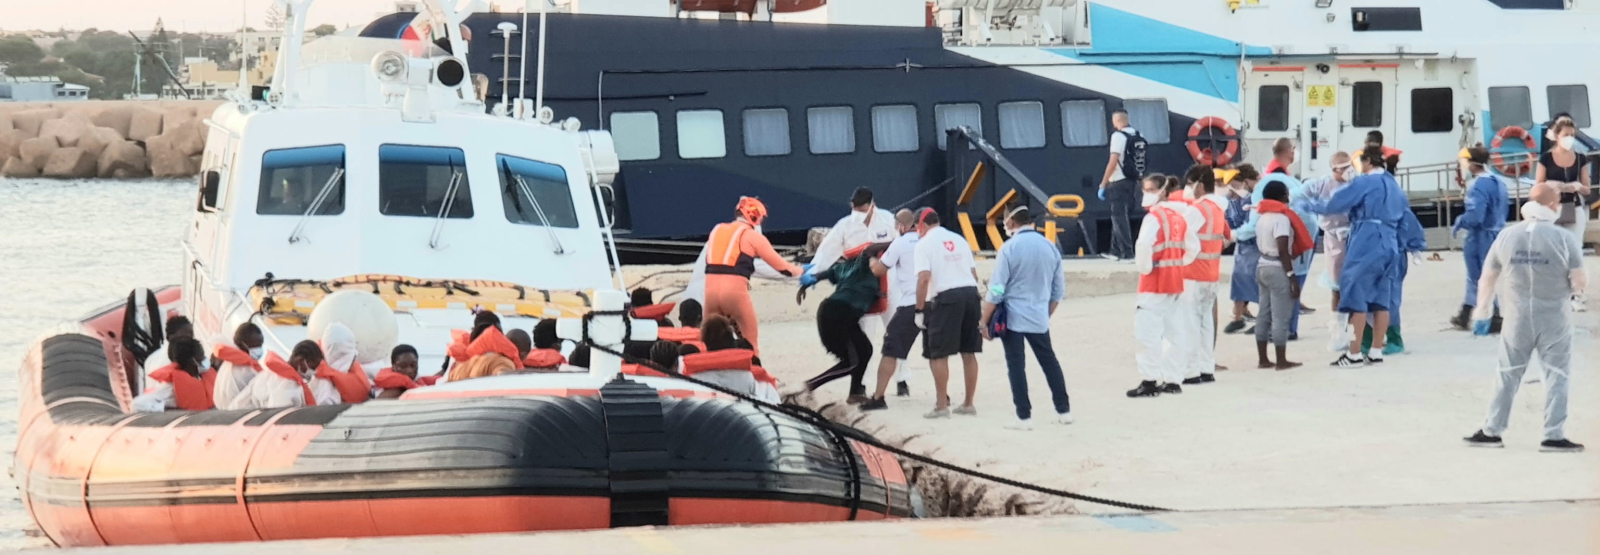 Migranci w Lampeduzie fot. EPA/ELIO DESIDERIO 